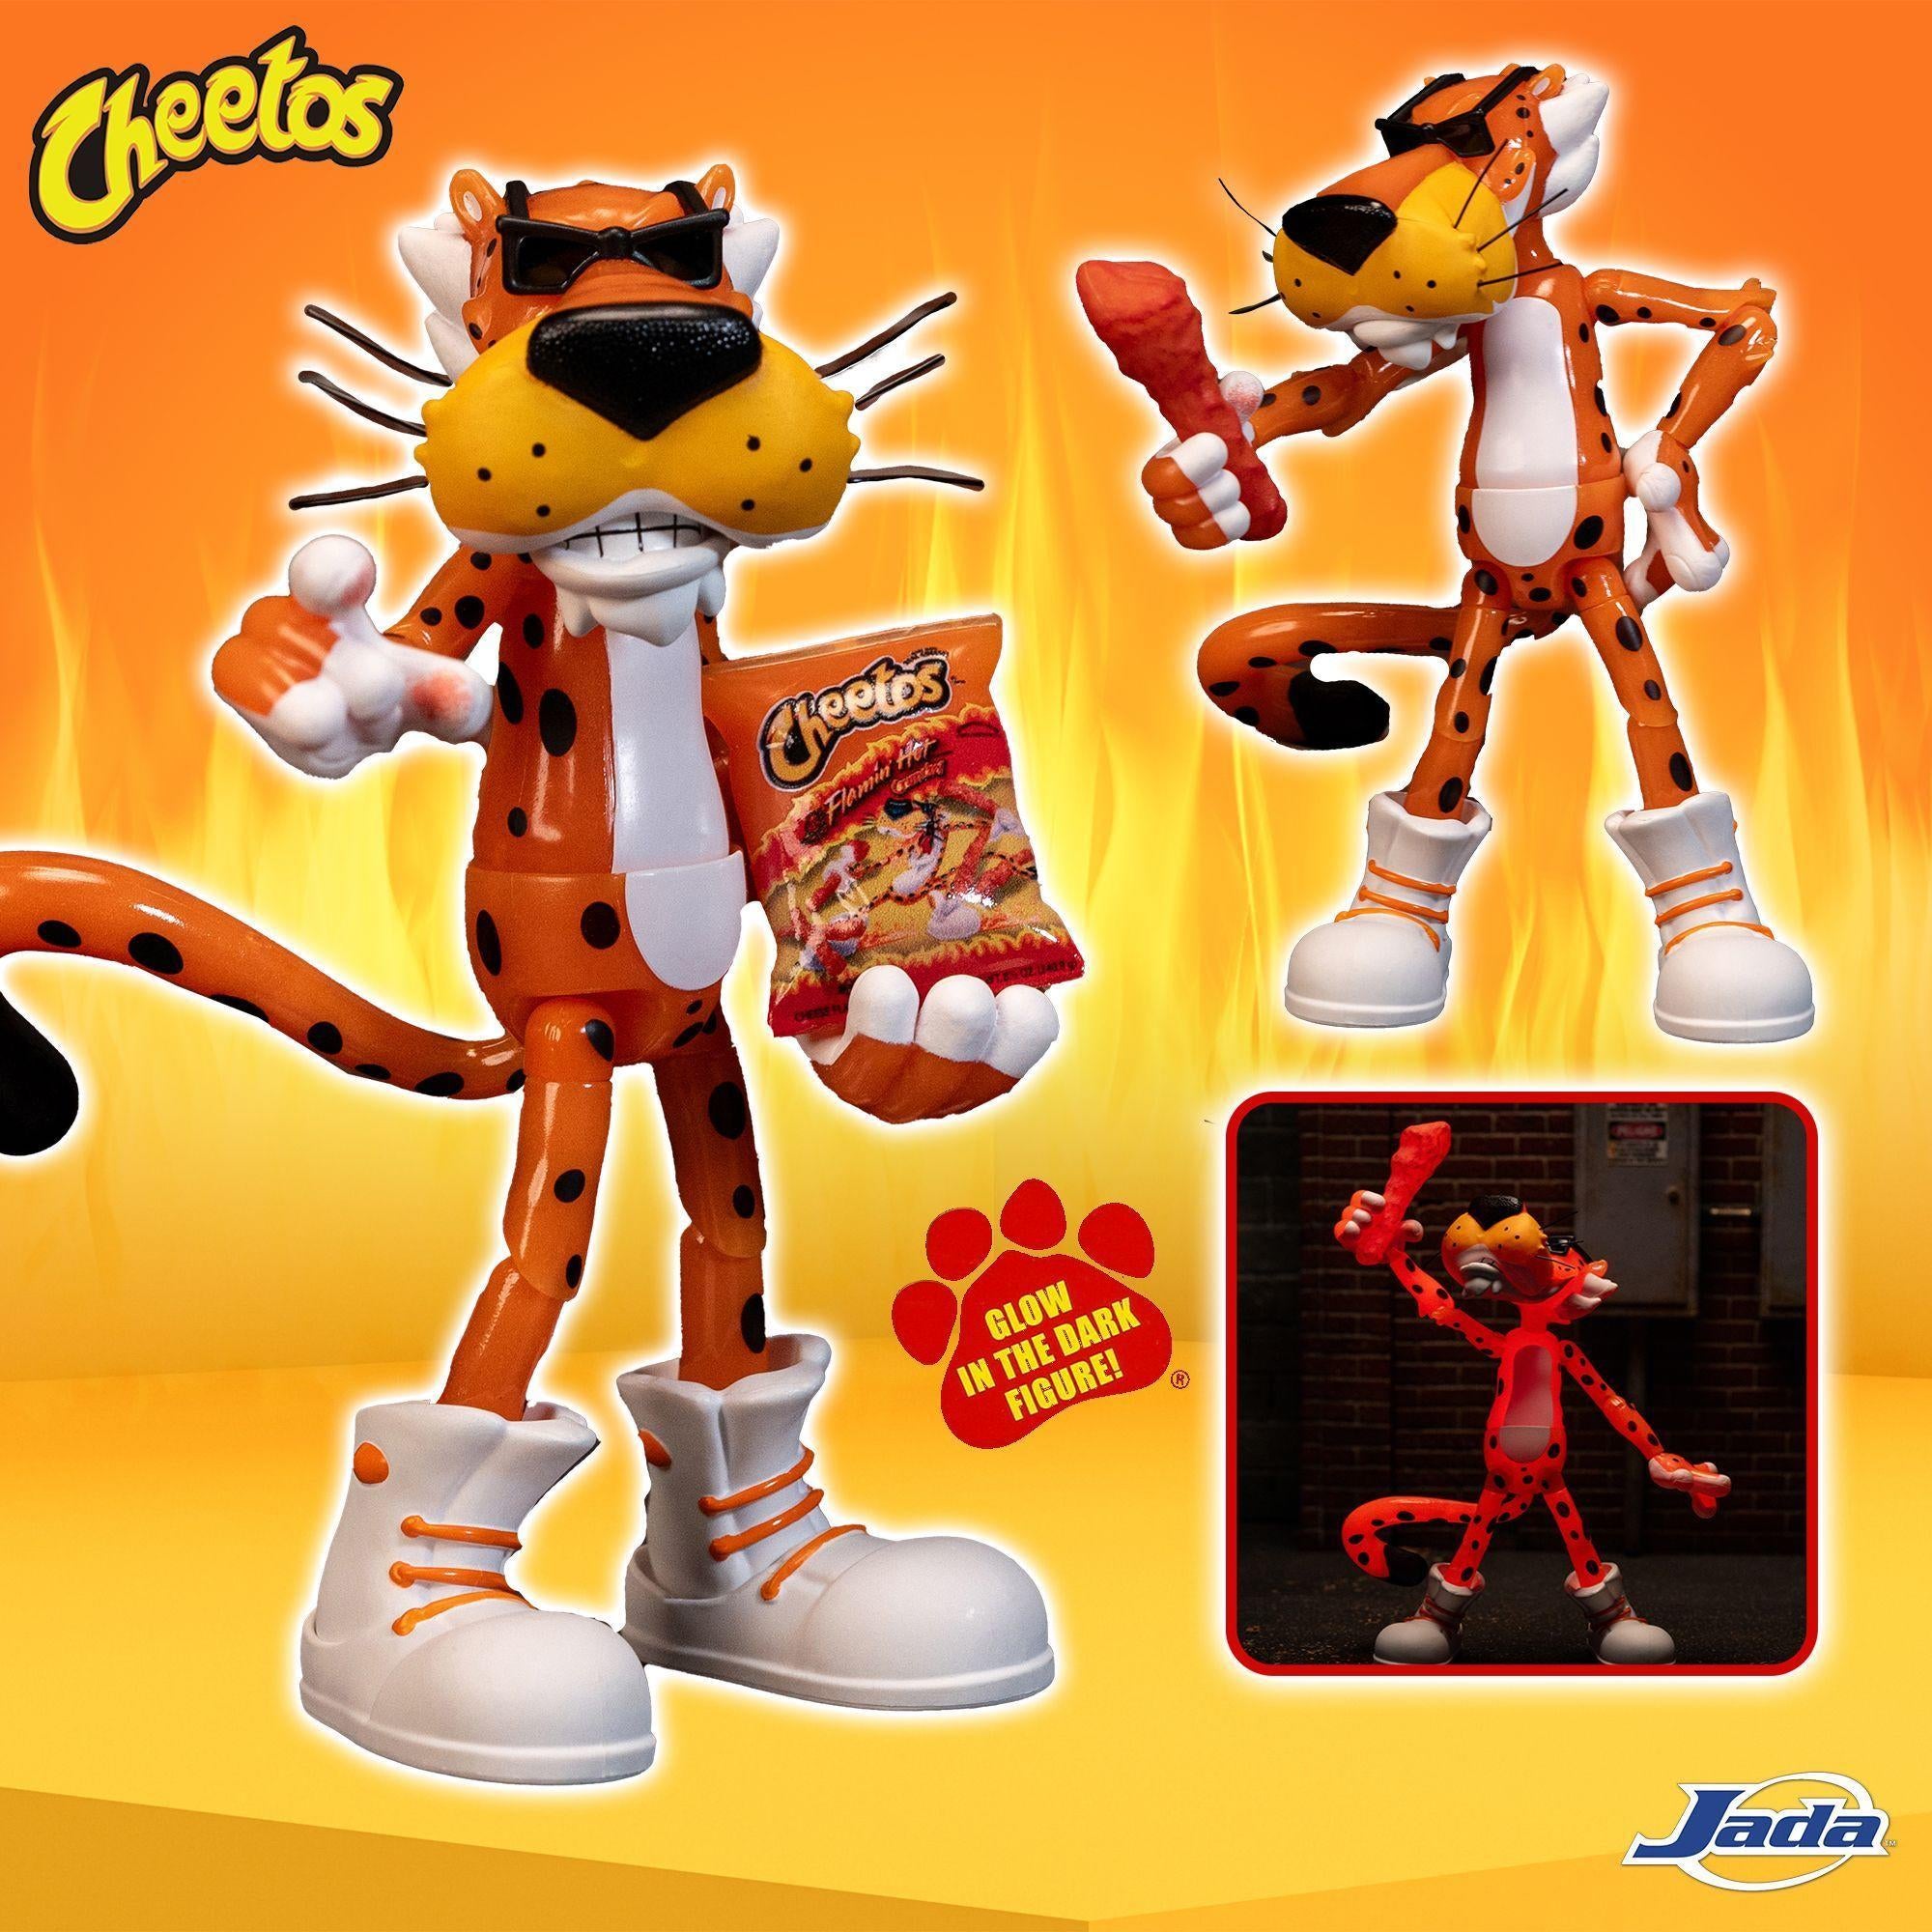 Фигурка Cheetos Chester Cheetah получила эксклюзивное издание Flamin' Hot Edition